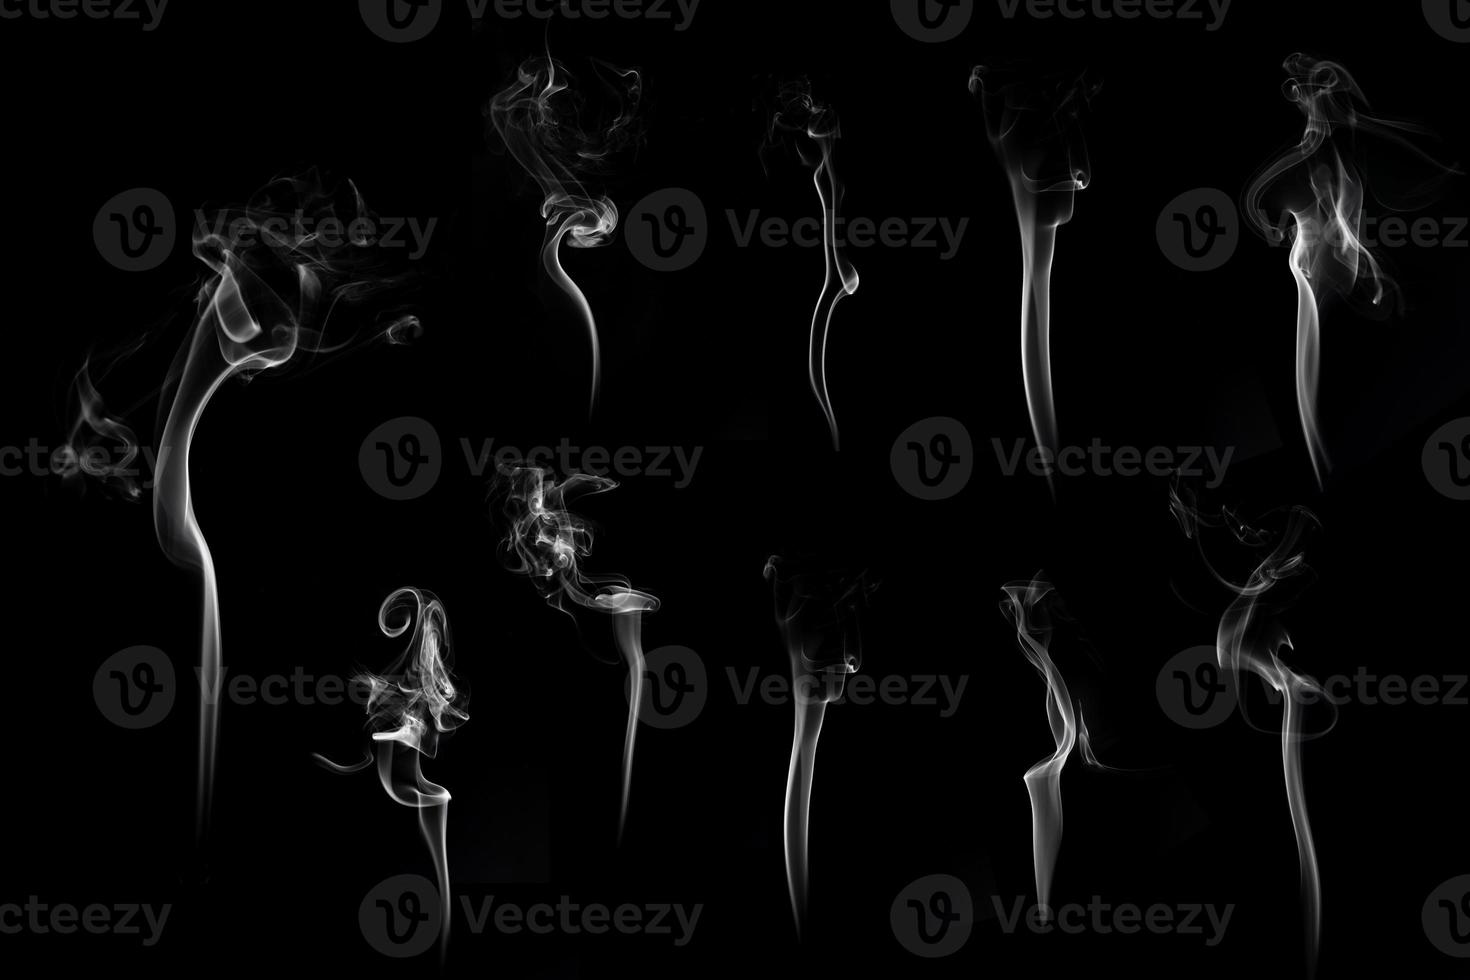 conjunto de humo blanco o disparo de nube en estudio, humo blanco de incienso y fondo negro, forma de onda y salpicadura para el diseño, el objeto y el concepto de fondo foto